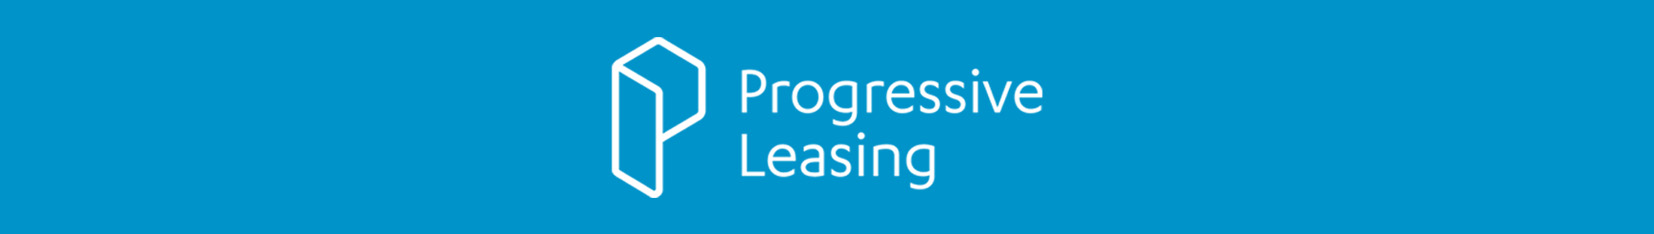 Progressive Leasing - Apply Now